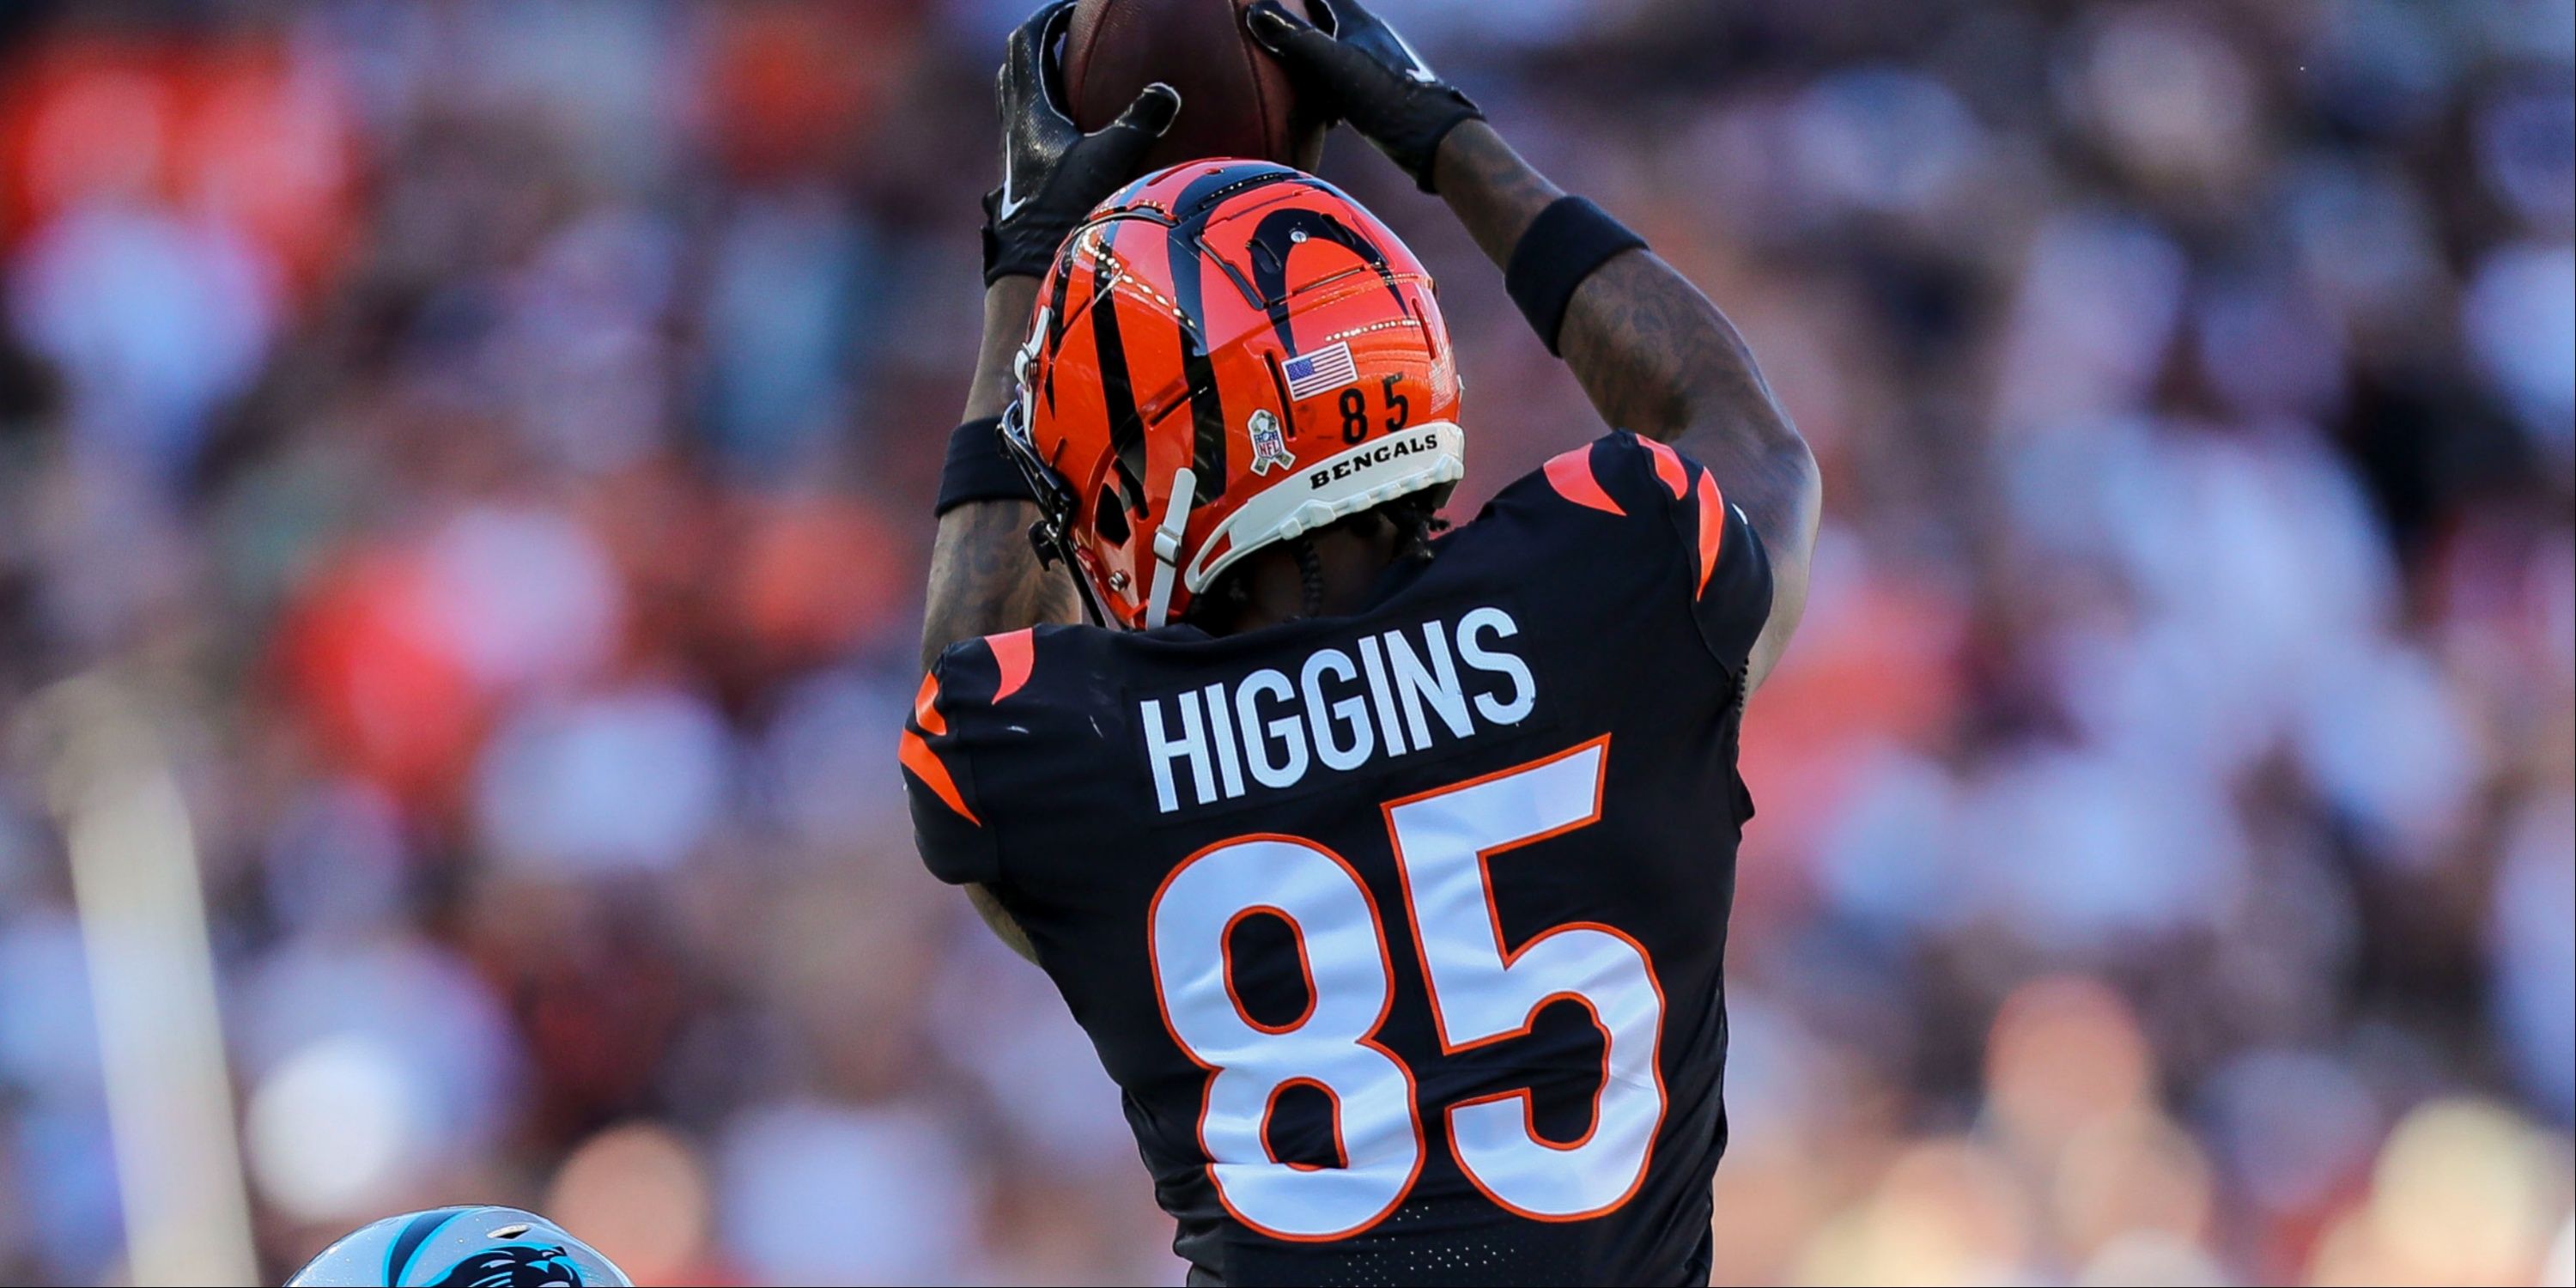 Cincinnati Bengals' wide receiver Tee Higgins